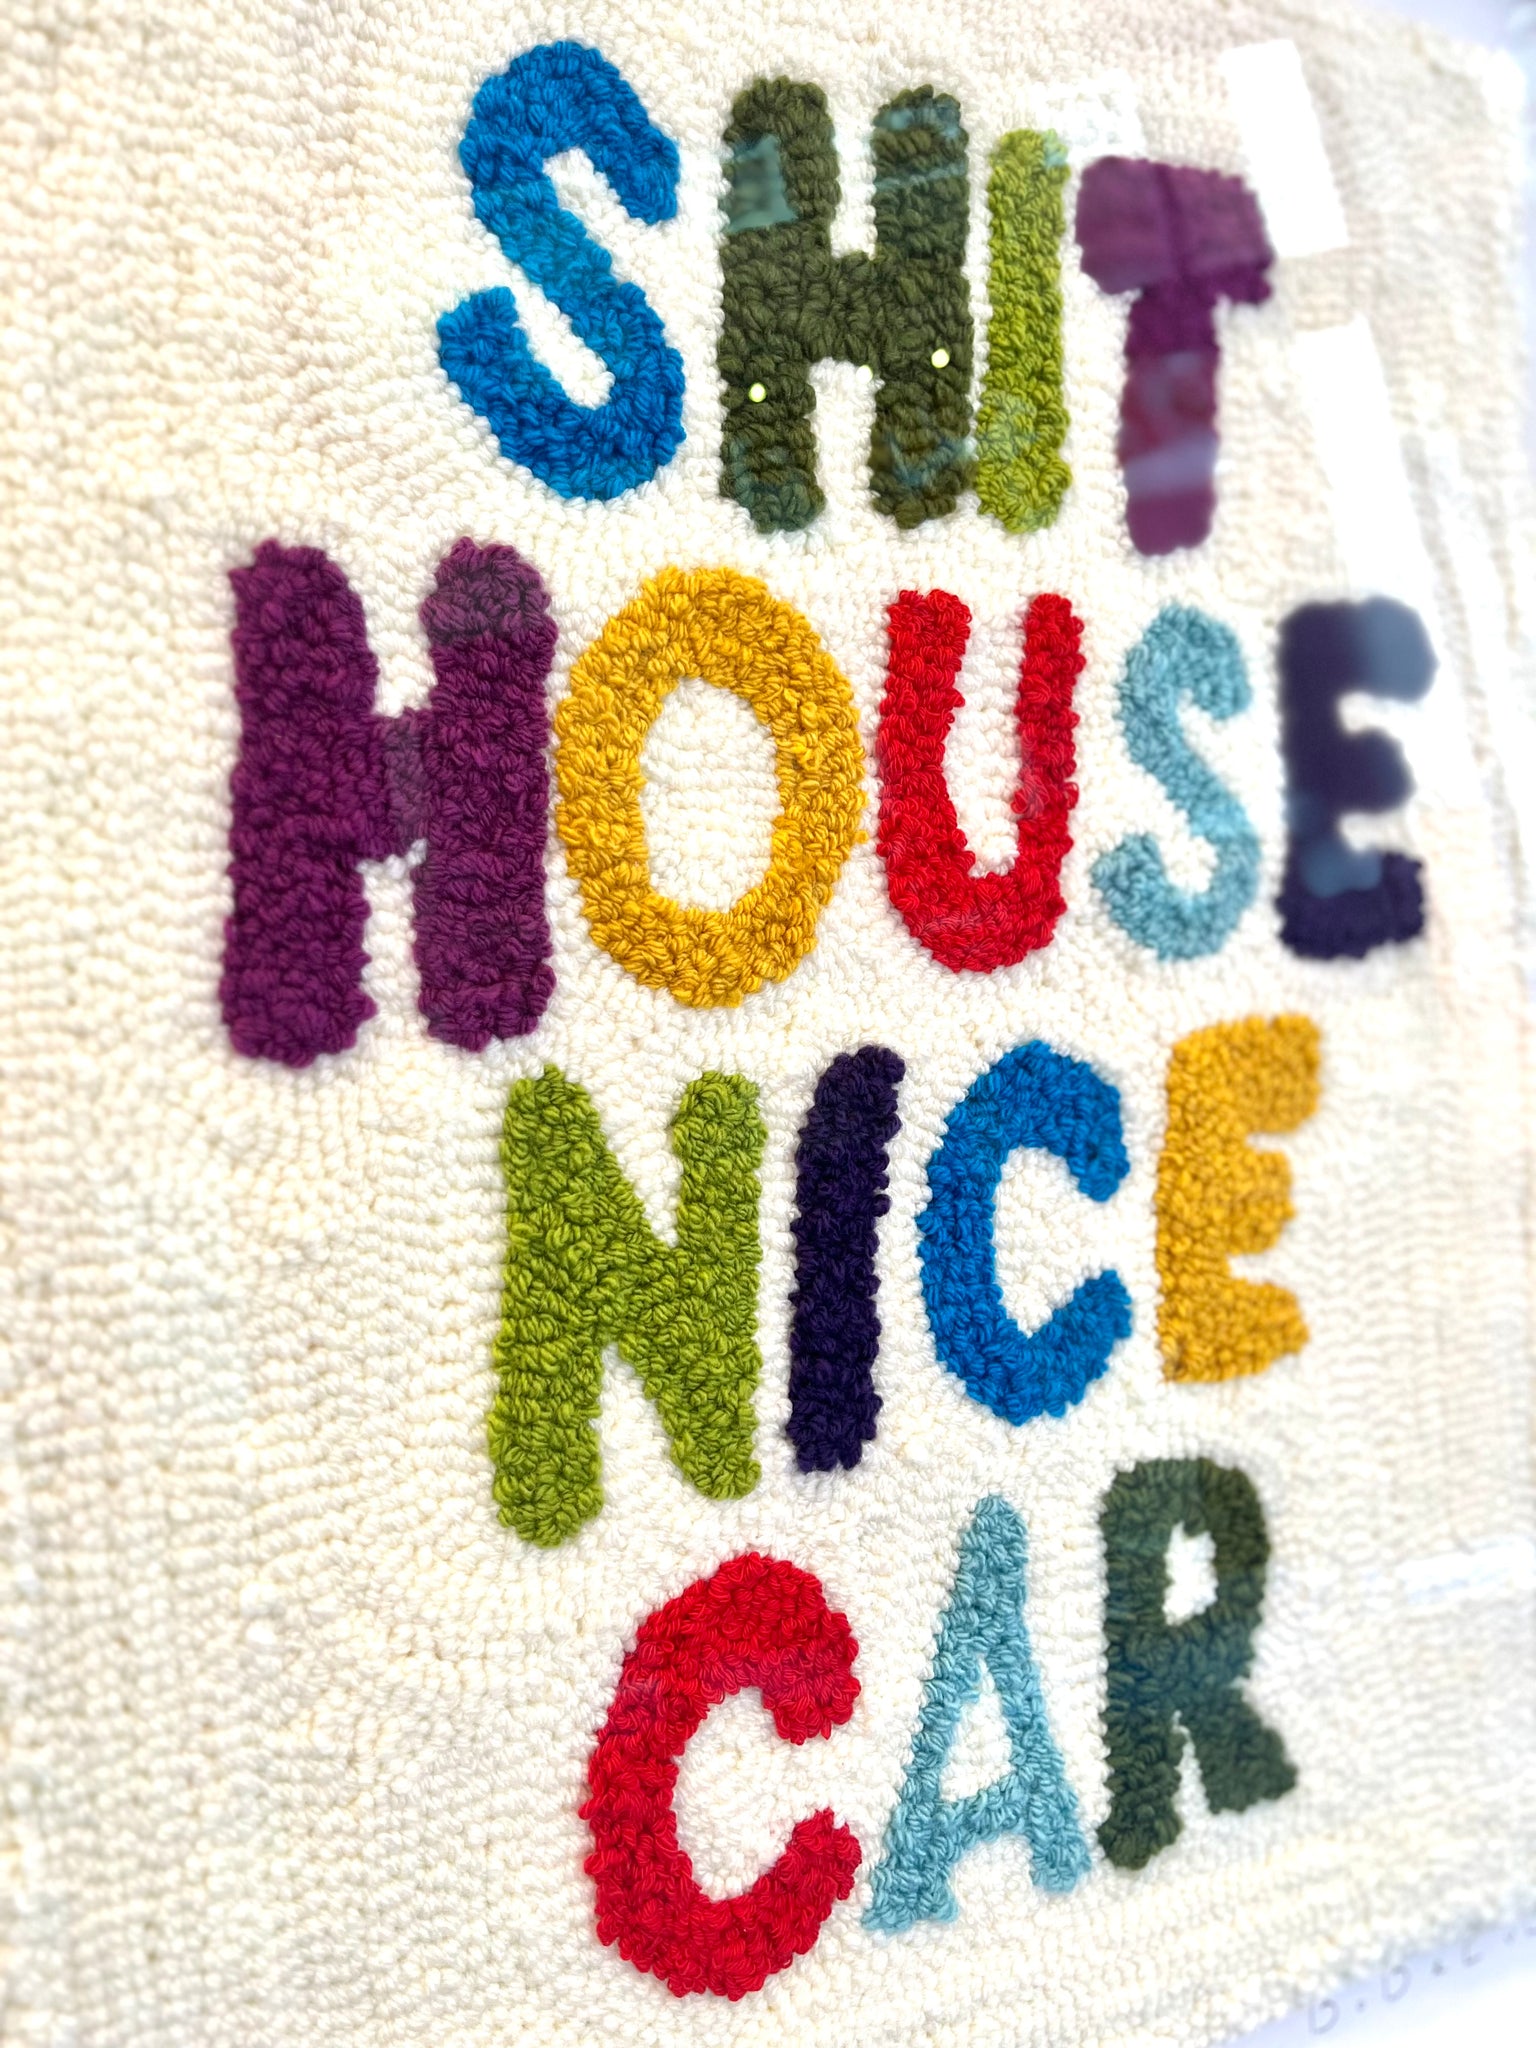 Shit house, nice car